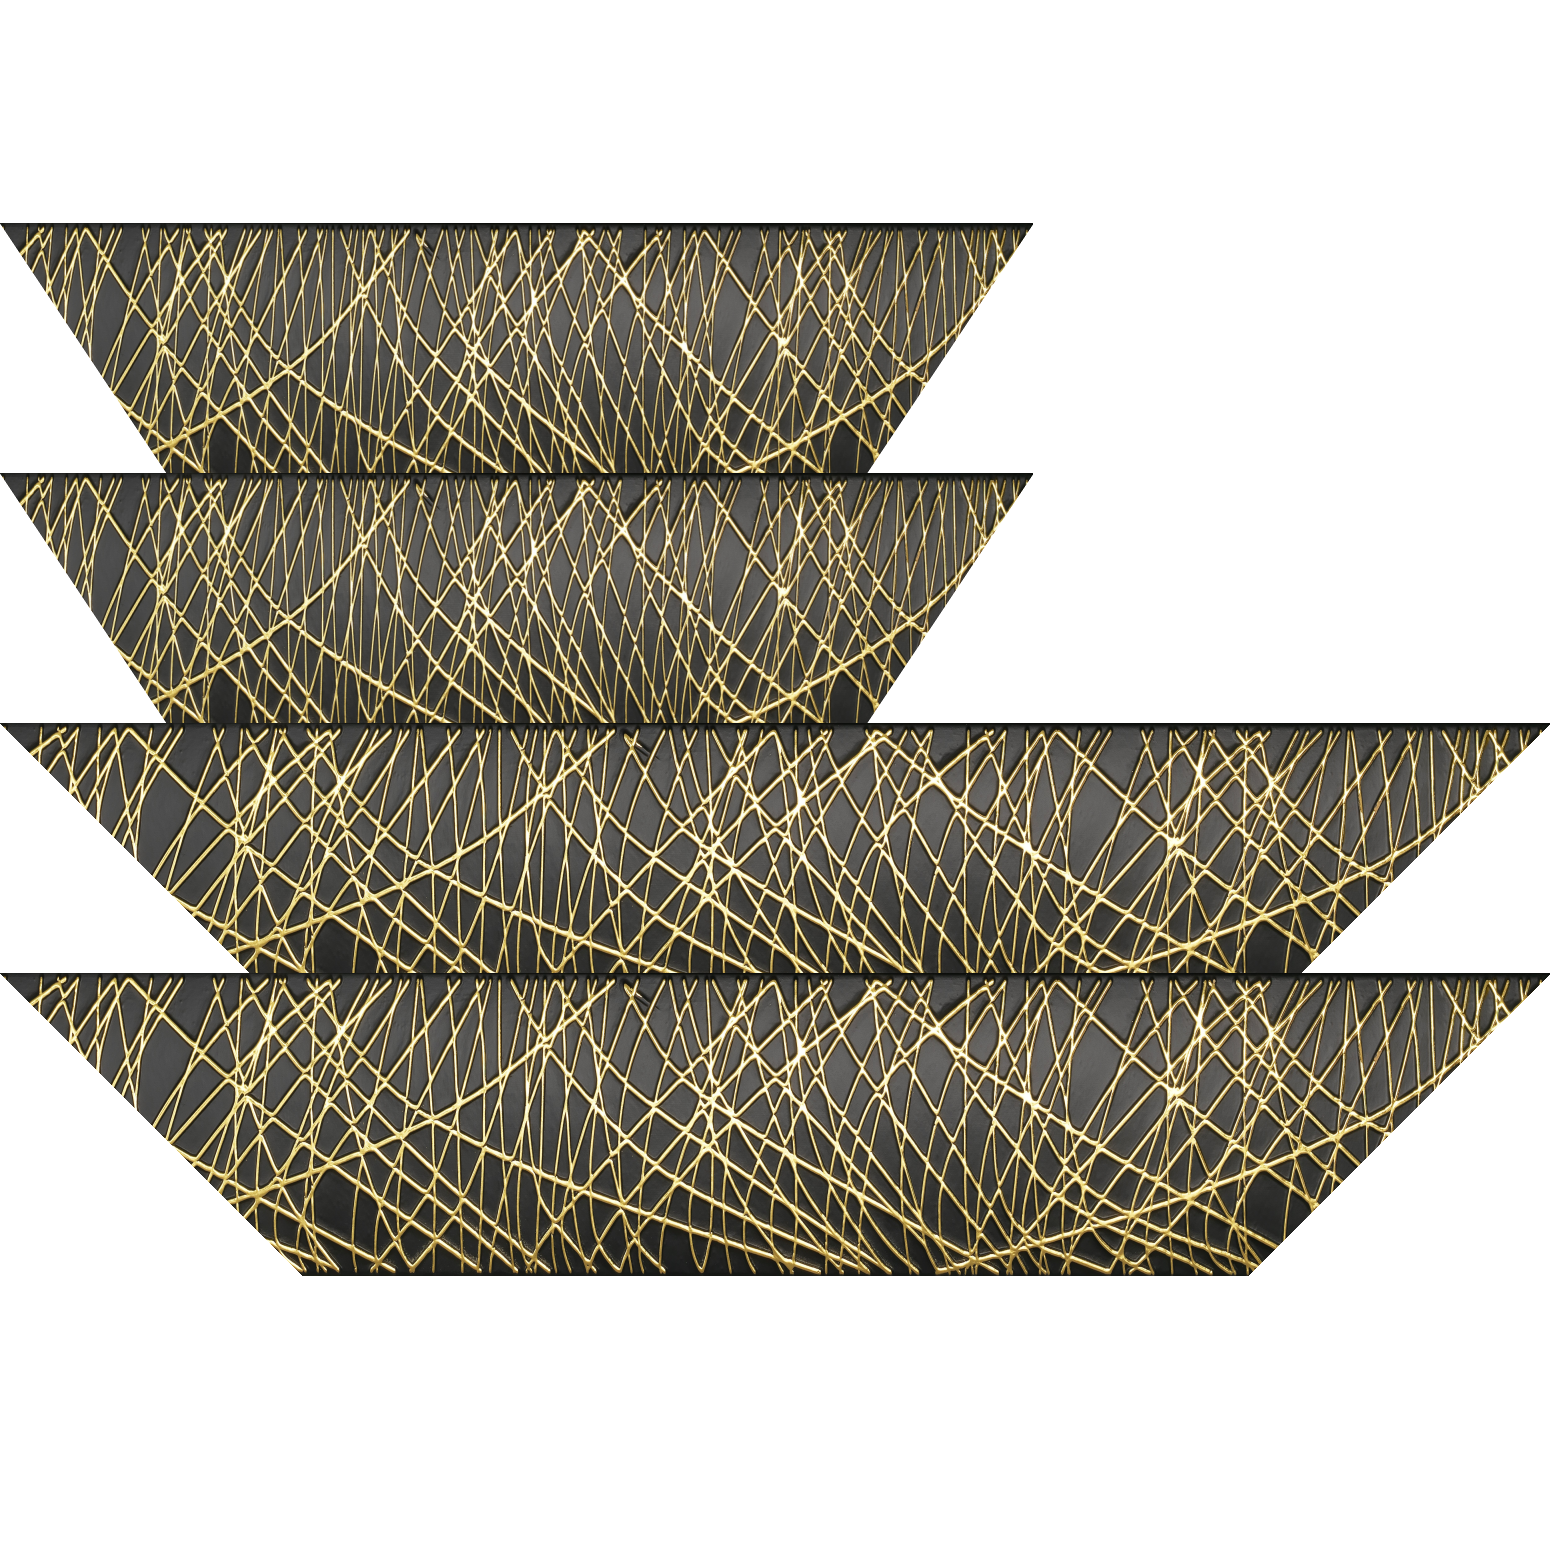 Baguette bois profil arrondi méplat largeur 9.9cm couleur noir satiné trait or en relief - 92x60